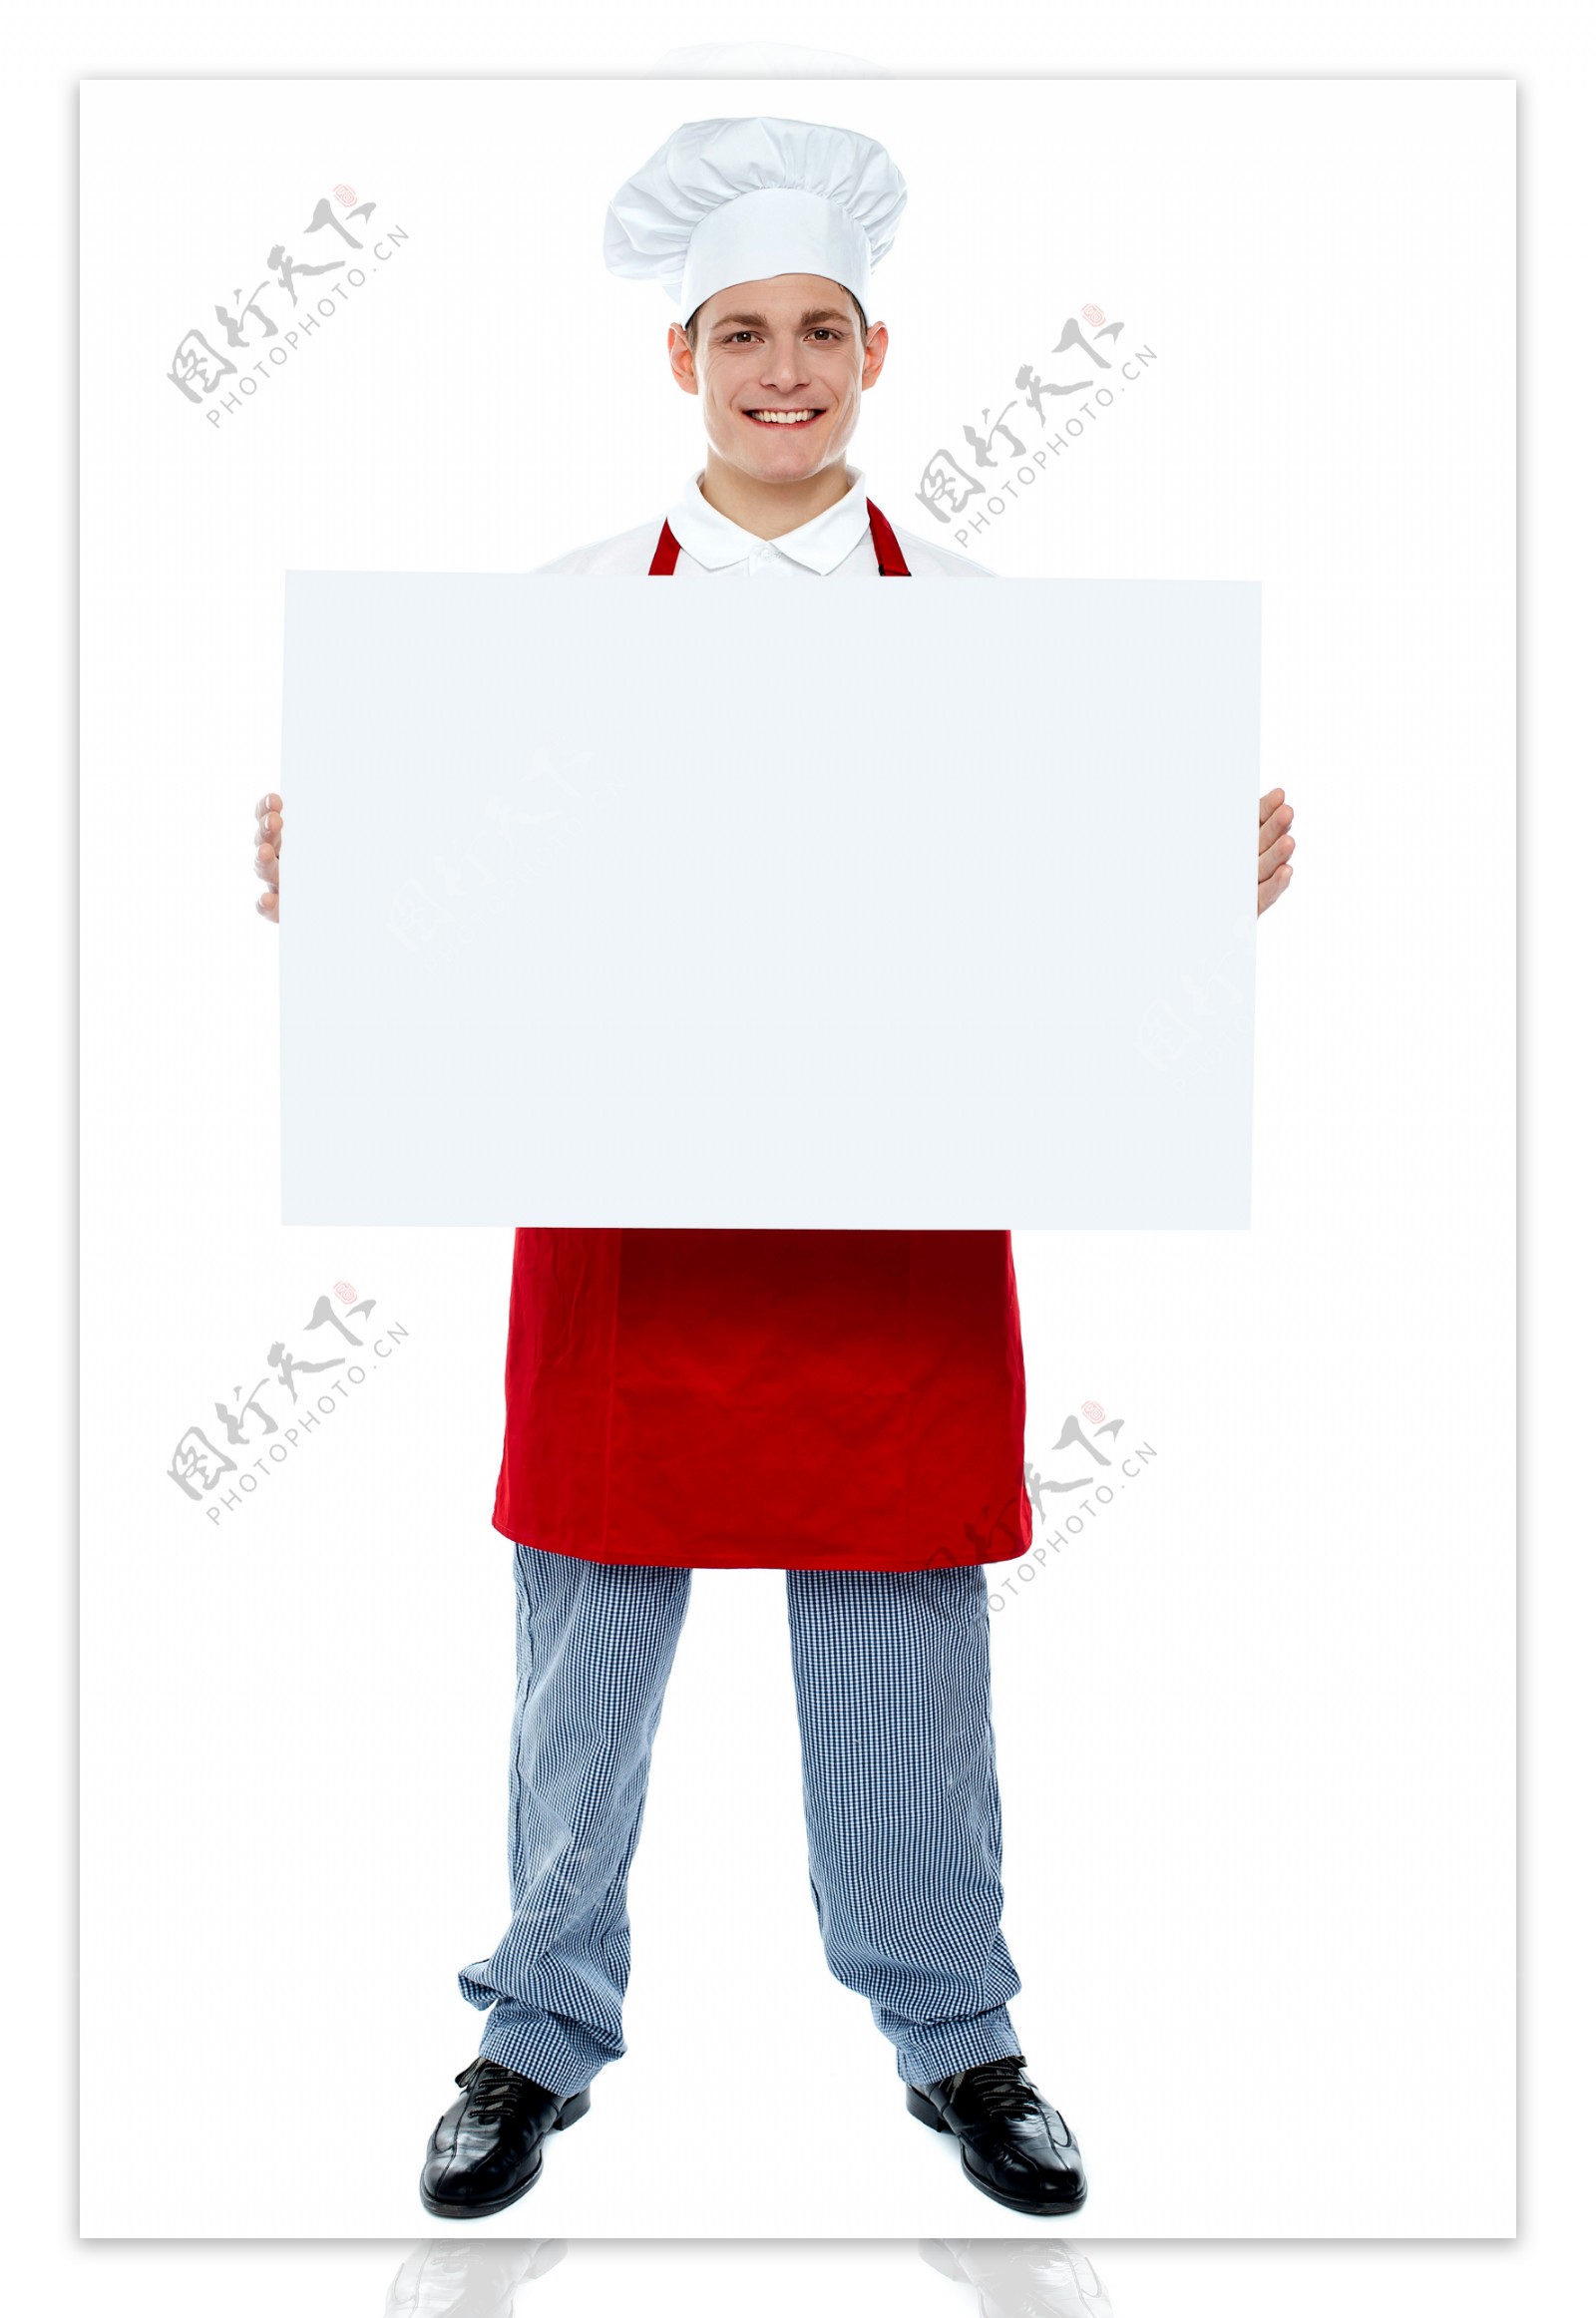 拿着白板的厨师图片